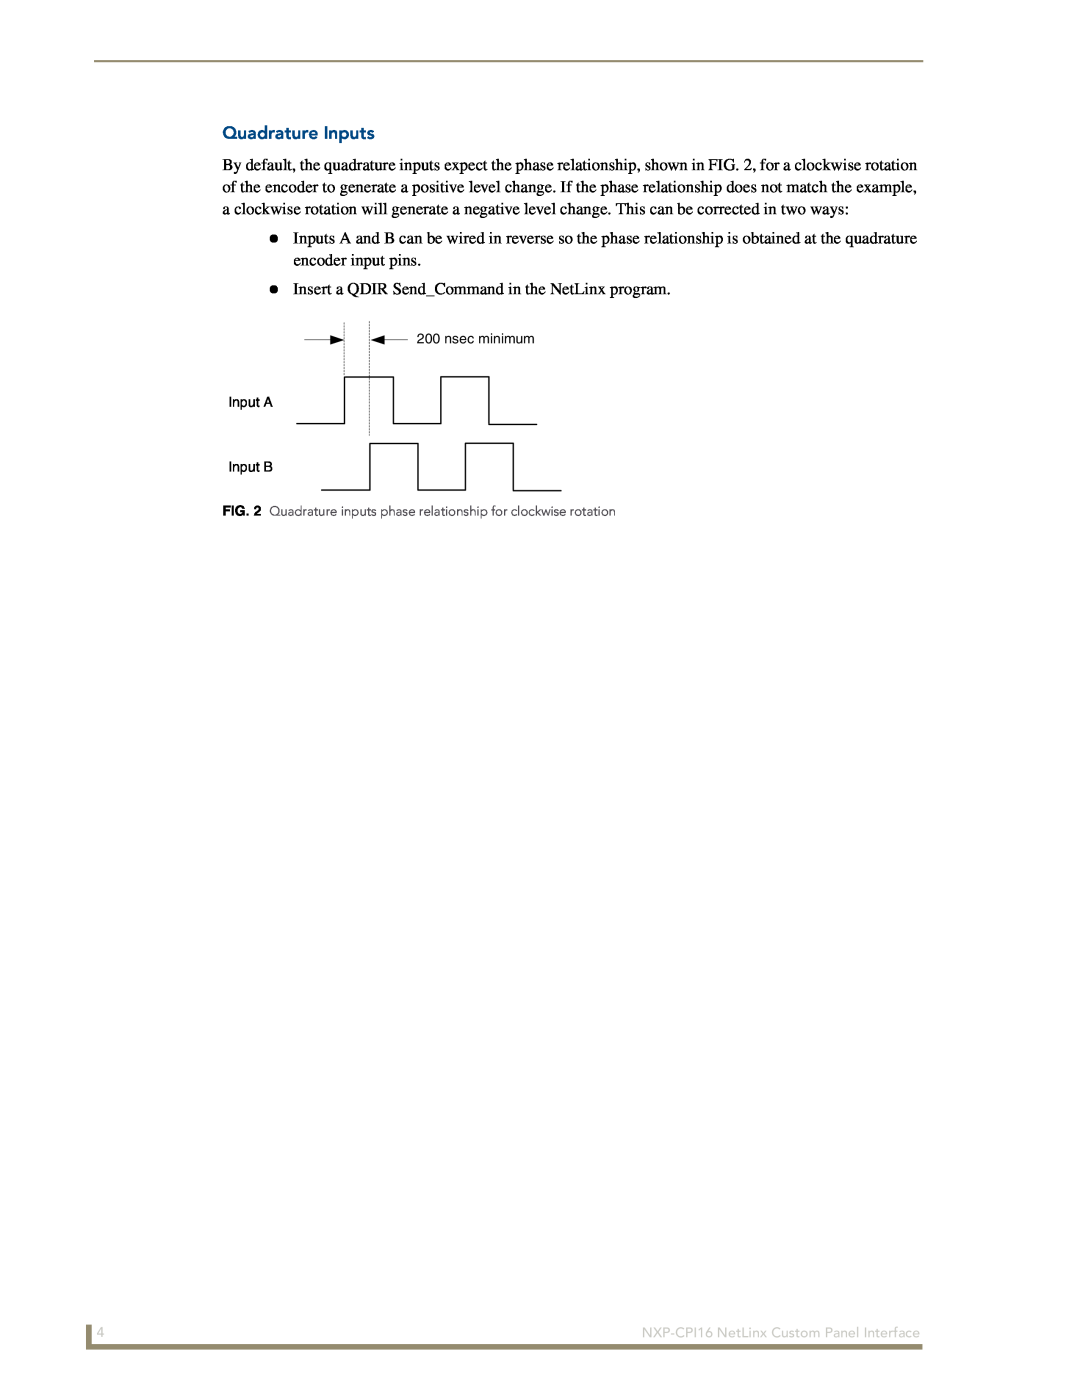 AMX NXP-CPI16 manual Quadrature Inputs, Insert a QDIR SendCommand in the NetLinx program 